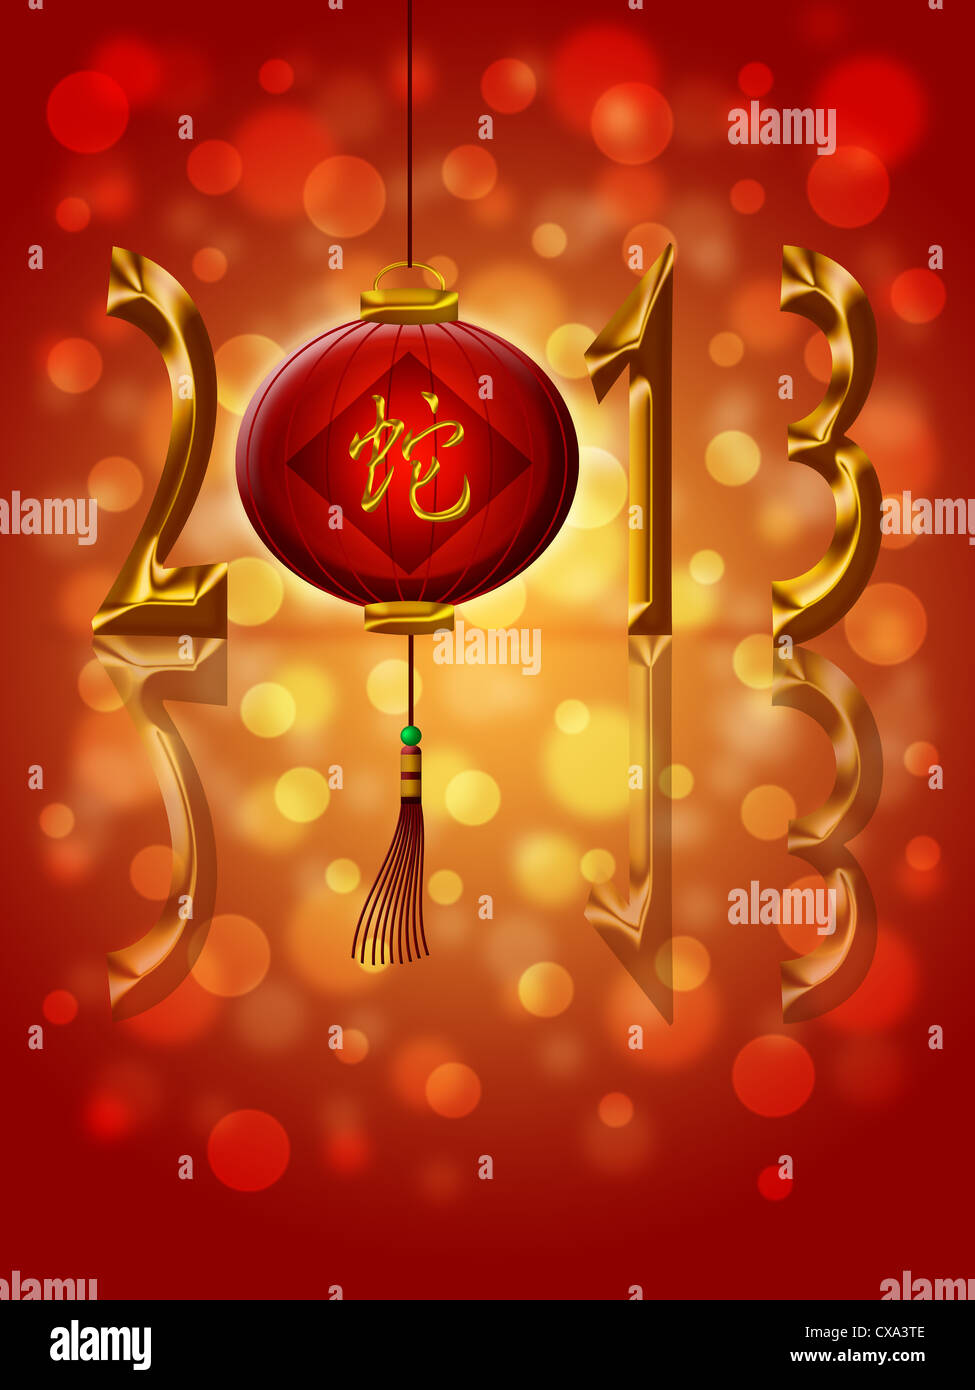 2013, Año Nuevo Lunar chino linterna con Snake caligrafía Ilustración de texto Foto de stock